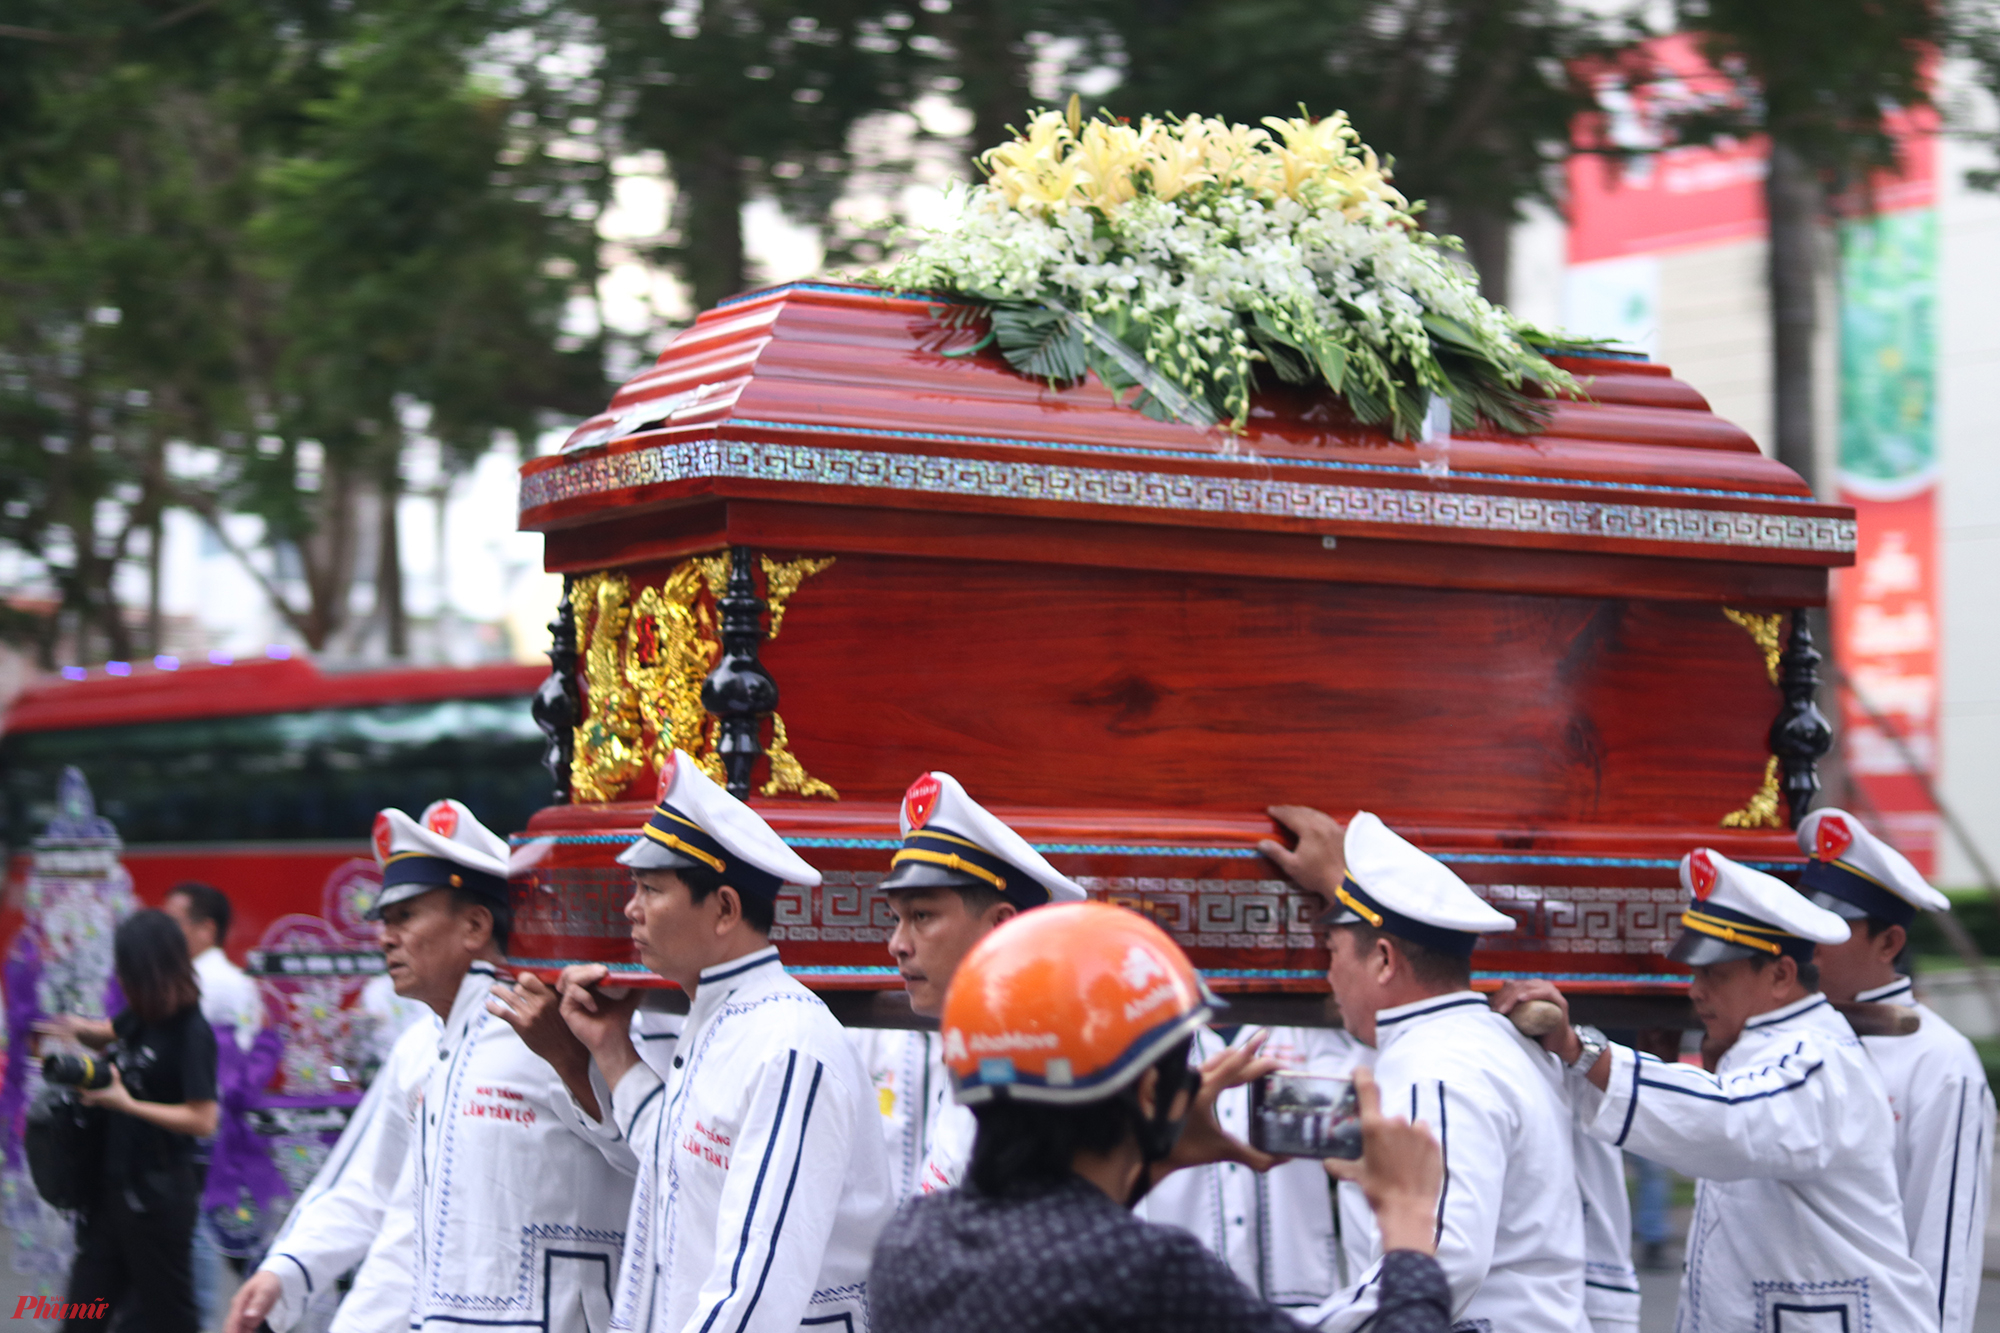 Sáng 8/1, lễ động quan của cố NSƯT Nguyễn Chánh Tín diễn ra tại một chung cư ở Q.7, TP.HCM. Đây cũng là nơi ông sống những năm cuối đời cùng vợ và con gái. 